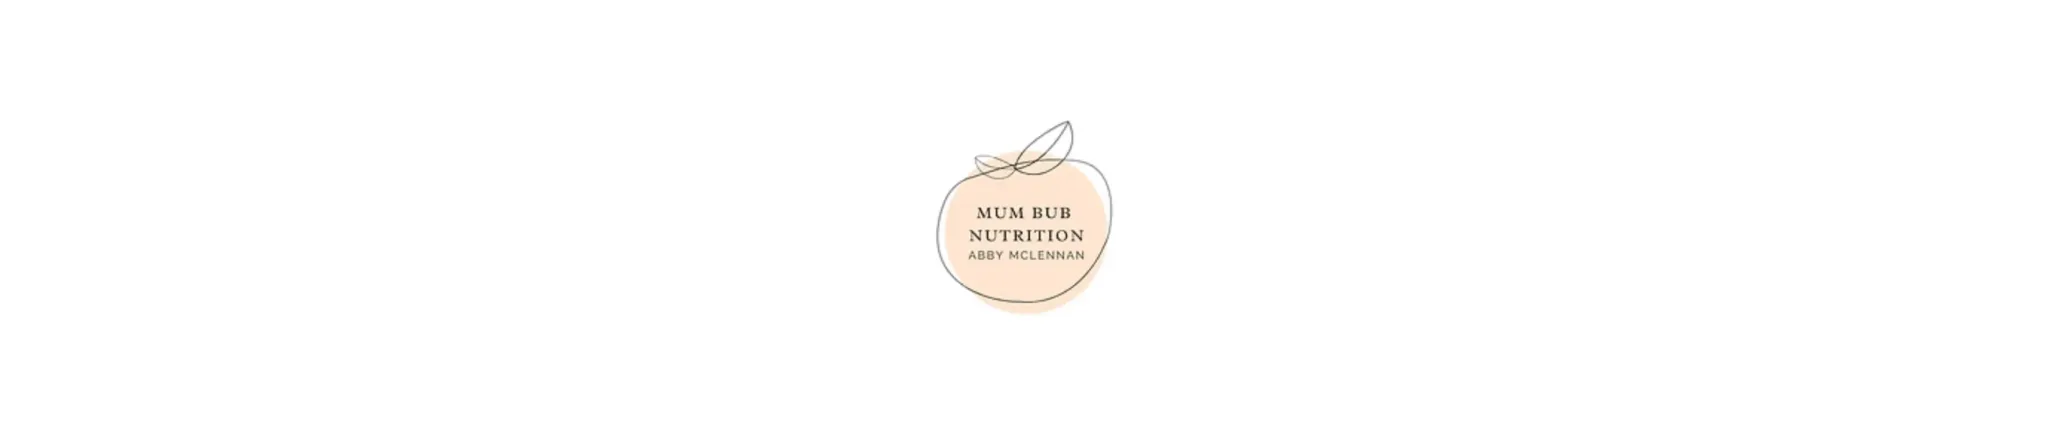 Mum Bub Nutrition